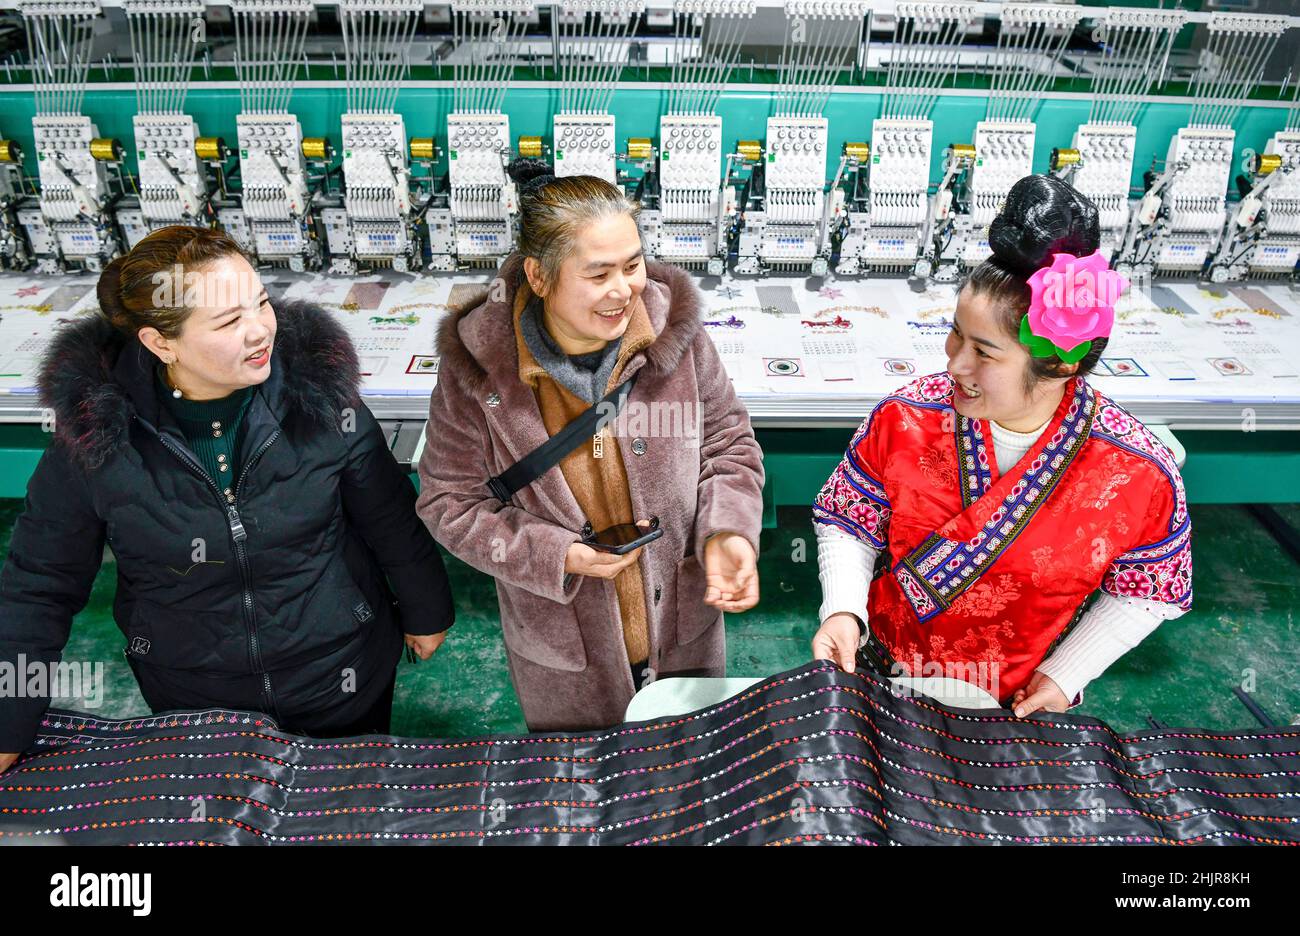 (220131) -- KAILI, 31. Januar 2022 (Xinhua) -- Yang Mei (R) stellt einem Kunden (C) in ihrer Bekleidungsfabrik in Kaili, südwestlich der Provinz Guizhou, das Tuch für ethnische Kleidung vor, 30. Januar 2022. Das Dorf Kaishao, die Heimatstadt des Stickerers Yang Mei, war aufgrund seines schlechten Bodens und der begrenzten Transportbedingungen verarmt. Viele Dorfbewohner hier entschieden sich, als Immigranten an anderen Orten zu arbeiten. Dank der lokalen Politik zur Armutsbekämpfung erhielt Yang Mei's Familie im Jahr 2016 die Chance, in ihr neues Zuhause an einem Umzugsort in Kaili zu ziehen. Mit Hilfe von Skill-Trainings und support Stockfoto